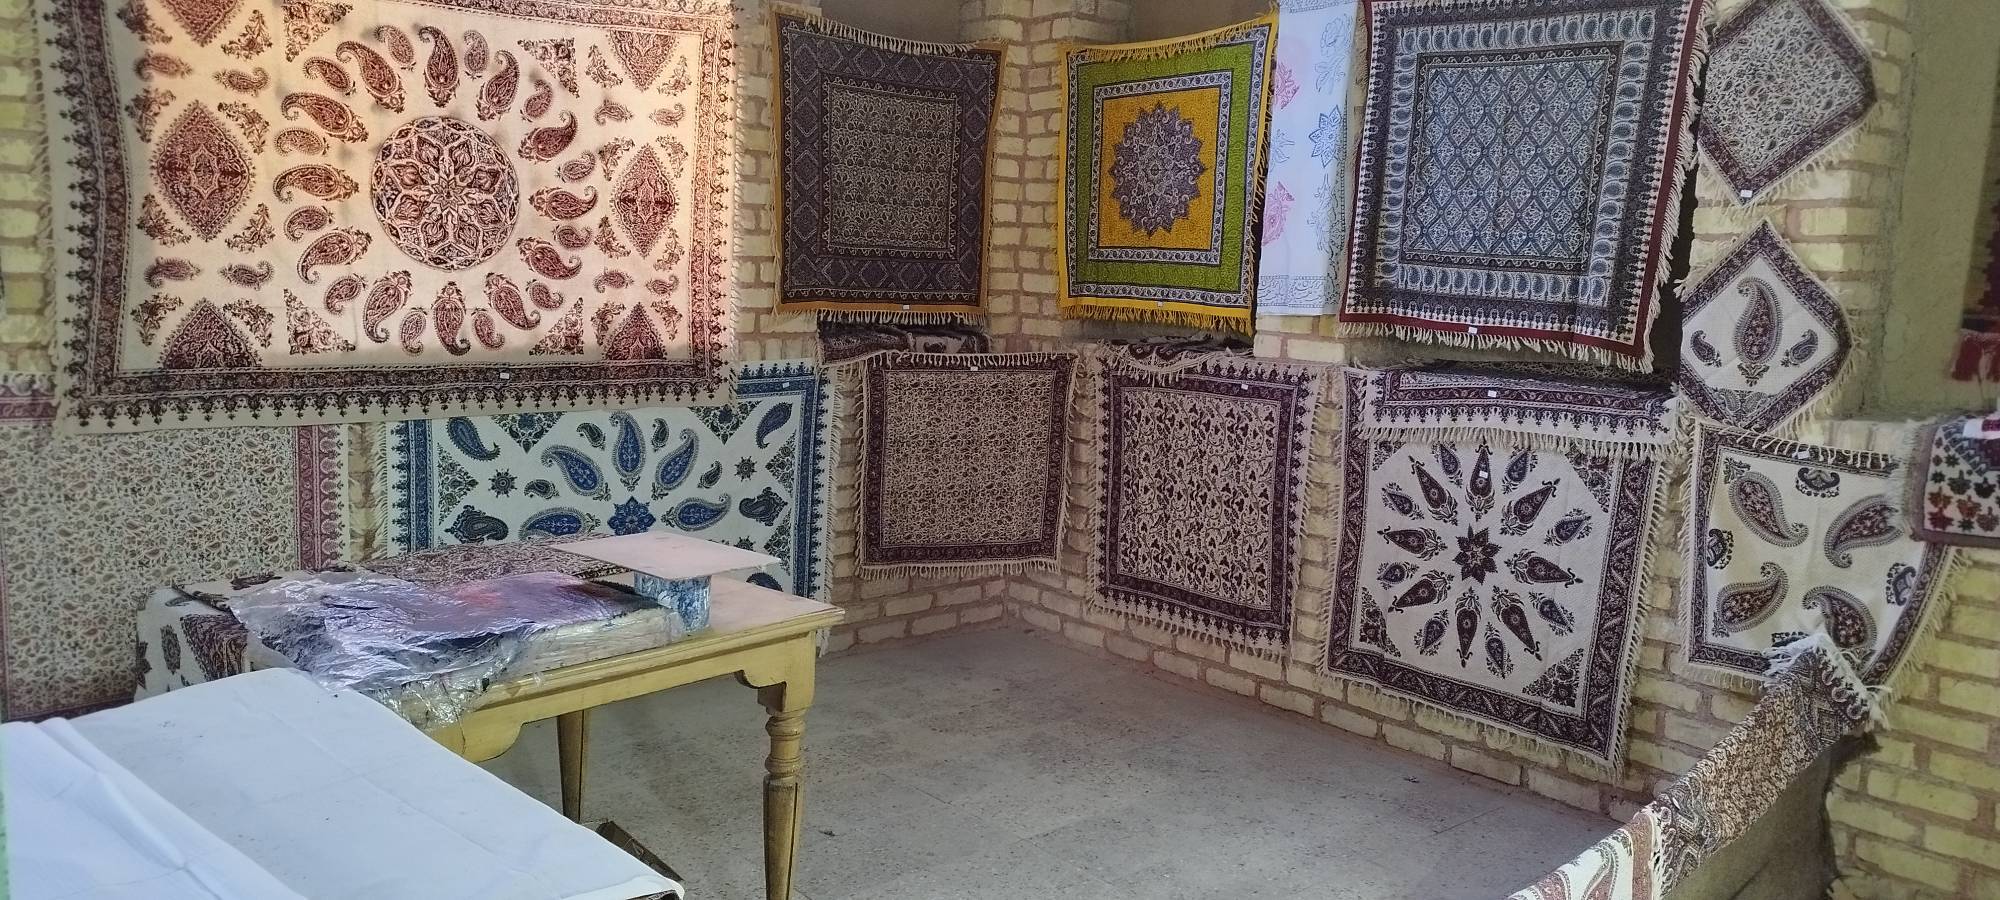 بر پایی نمایشگاه صنایع دستی در ایزدخواست